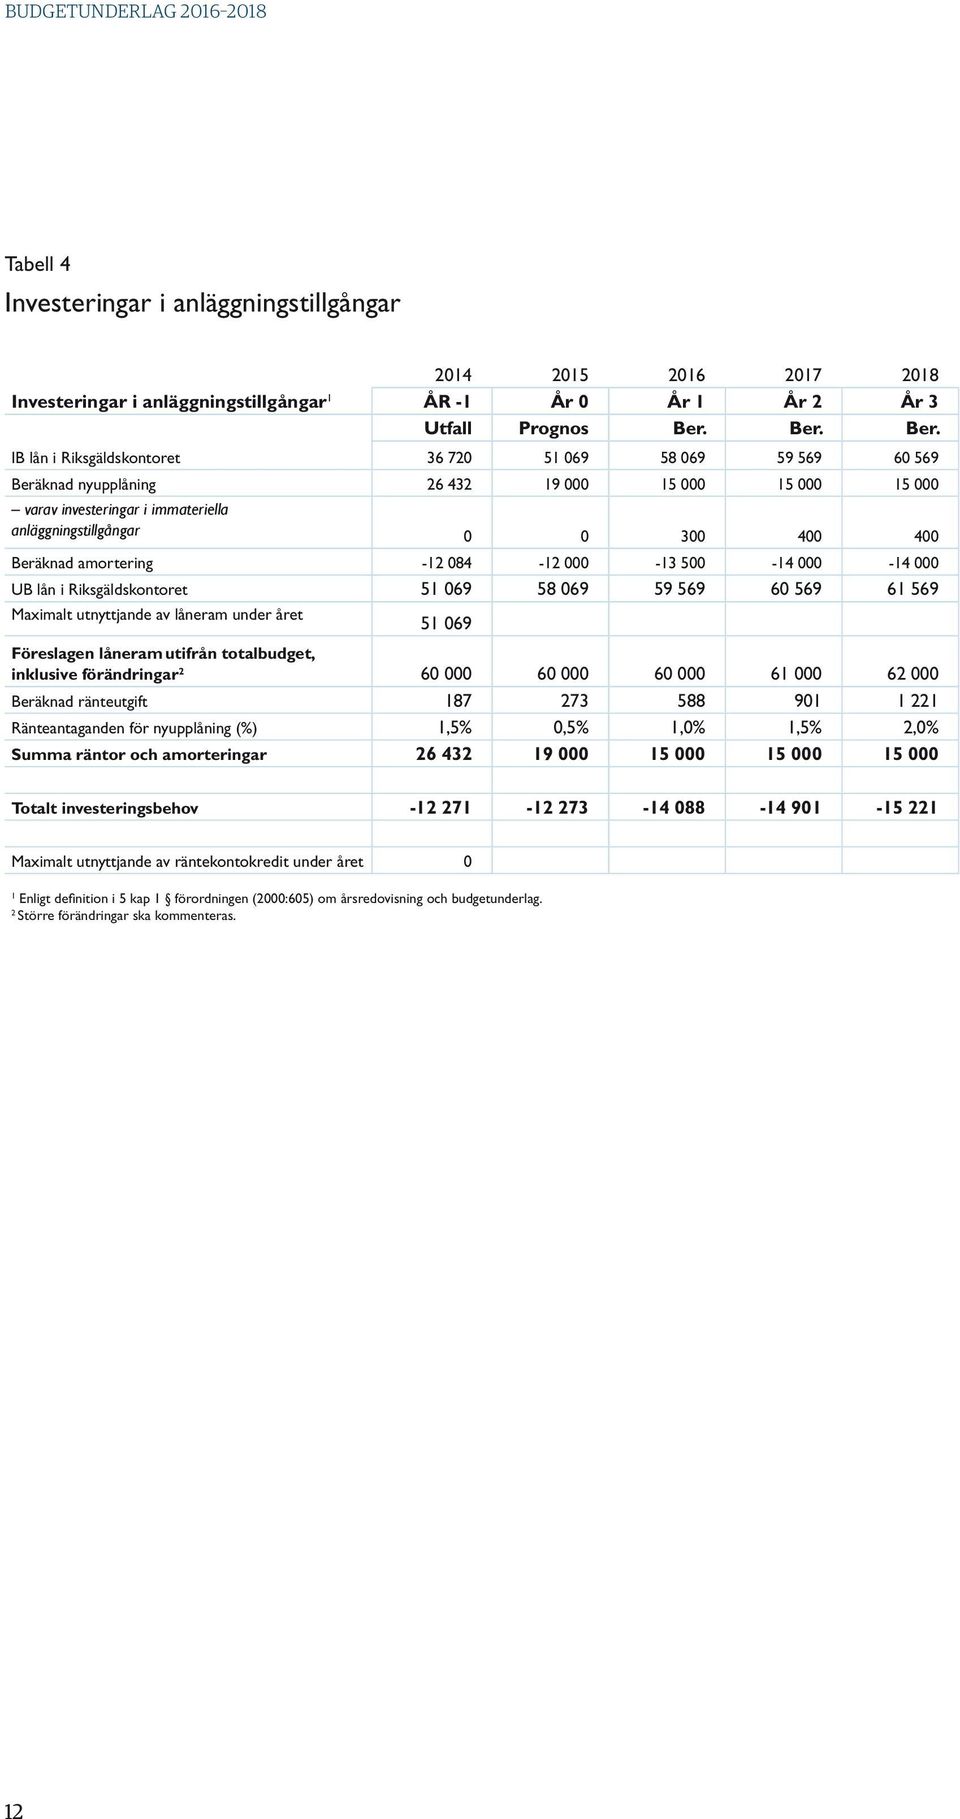 IB lån i Riksgäldskontoret 36 720 51 069 58 069 59 569 60 569 Beräknad nyupplåning 26 432 19 000 15 000 15 000 15 000 varav investeringar i immateriella anläggningstillgångar 0 0 300 400 400 Beräknad